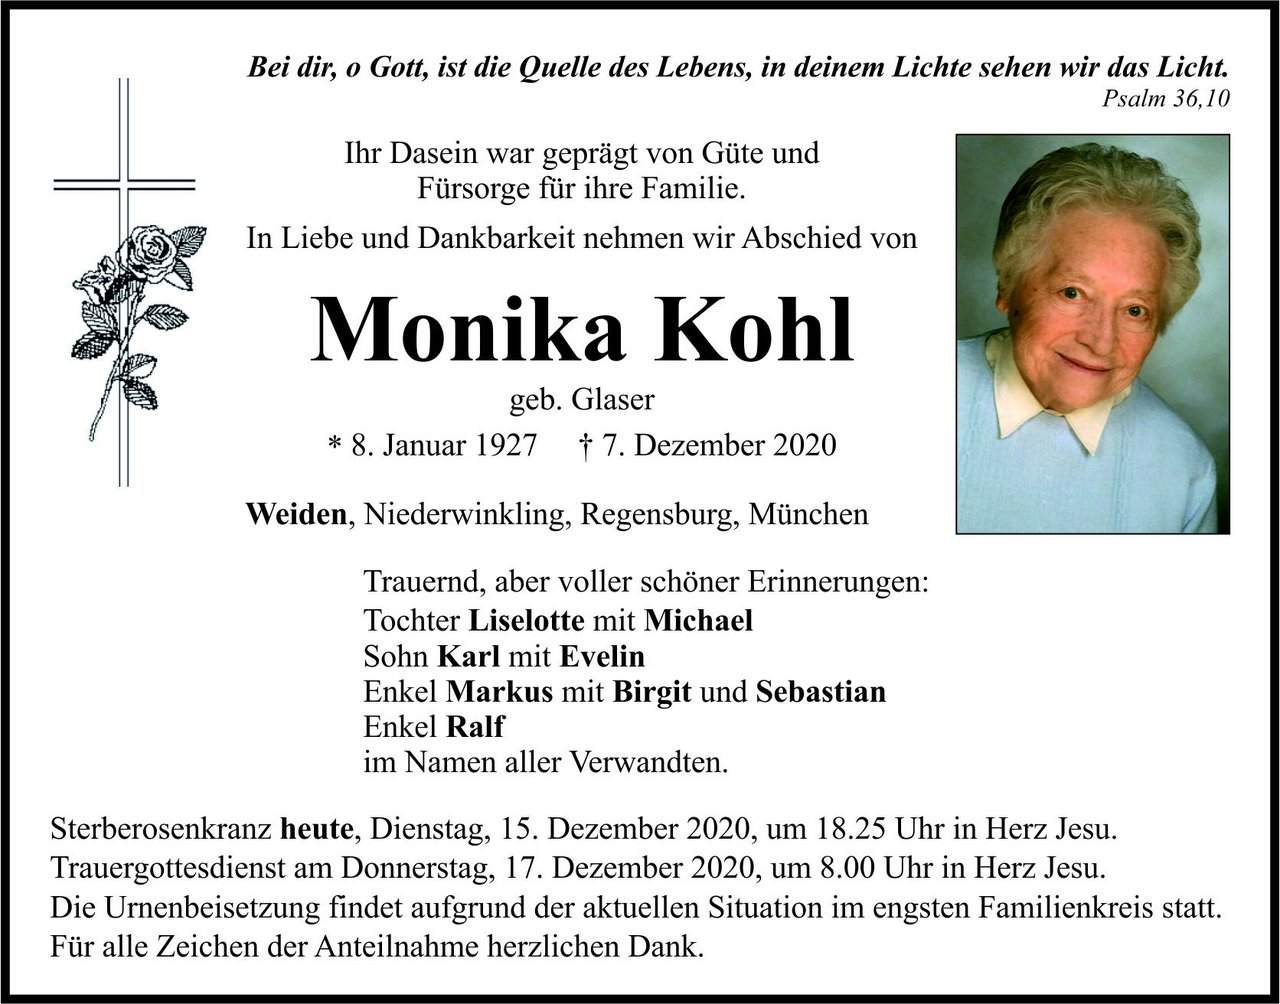 Traueranzeige Monika Kohl, Weiden